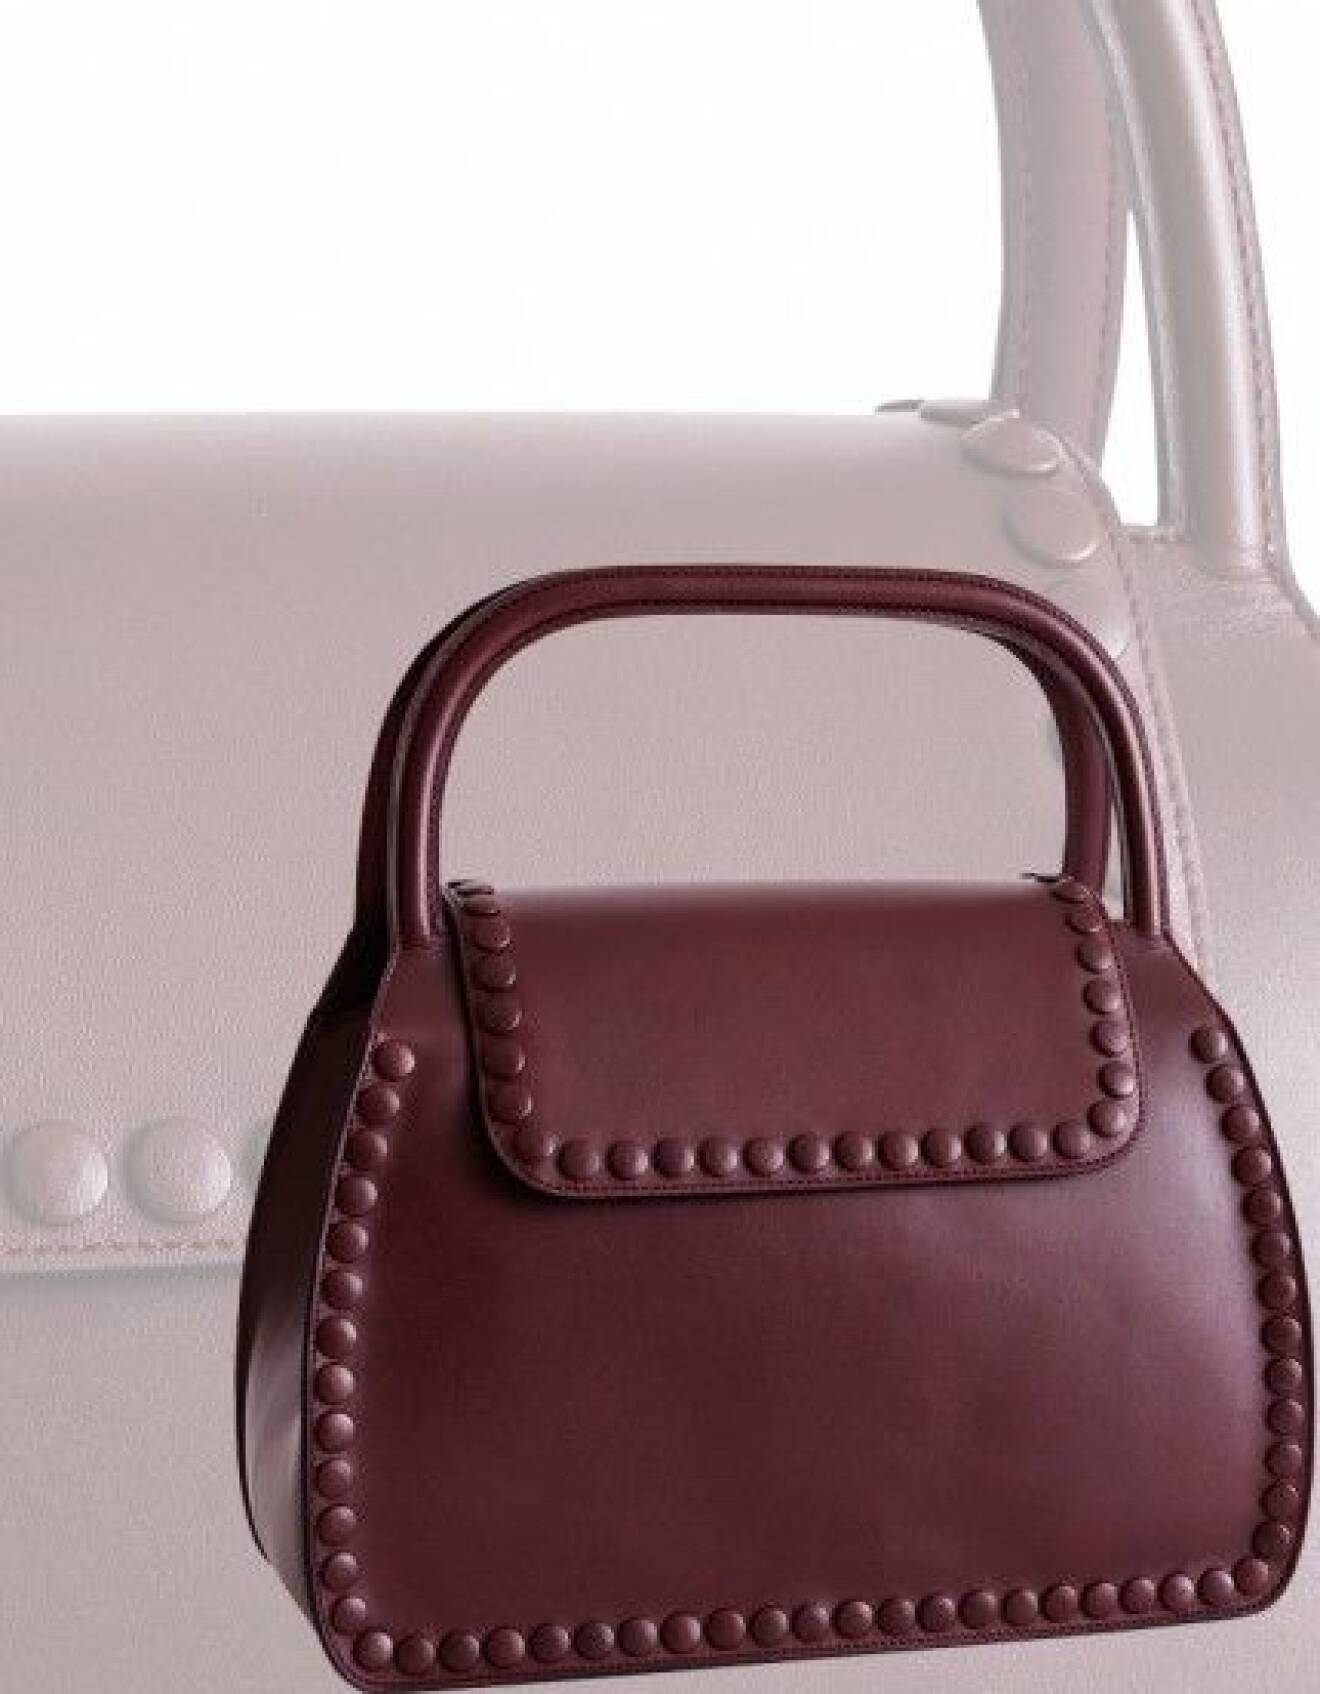 4. Samarbetet mellan stjärndesignern Monica Förster och anrika läderföretaget Palmgrens har resulterat ibland annat den här fina handväskan. Stitches & Buttons, 8 595 kr, Palmgrens.